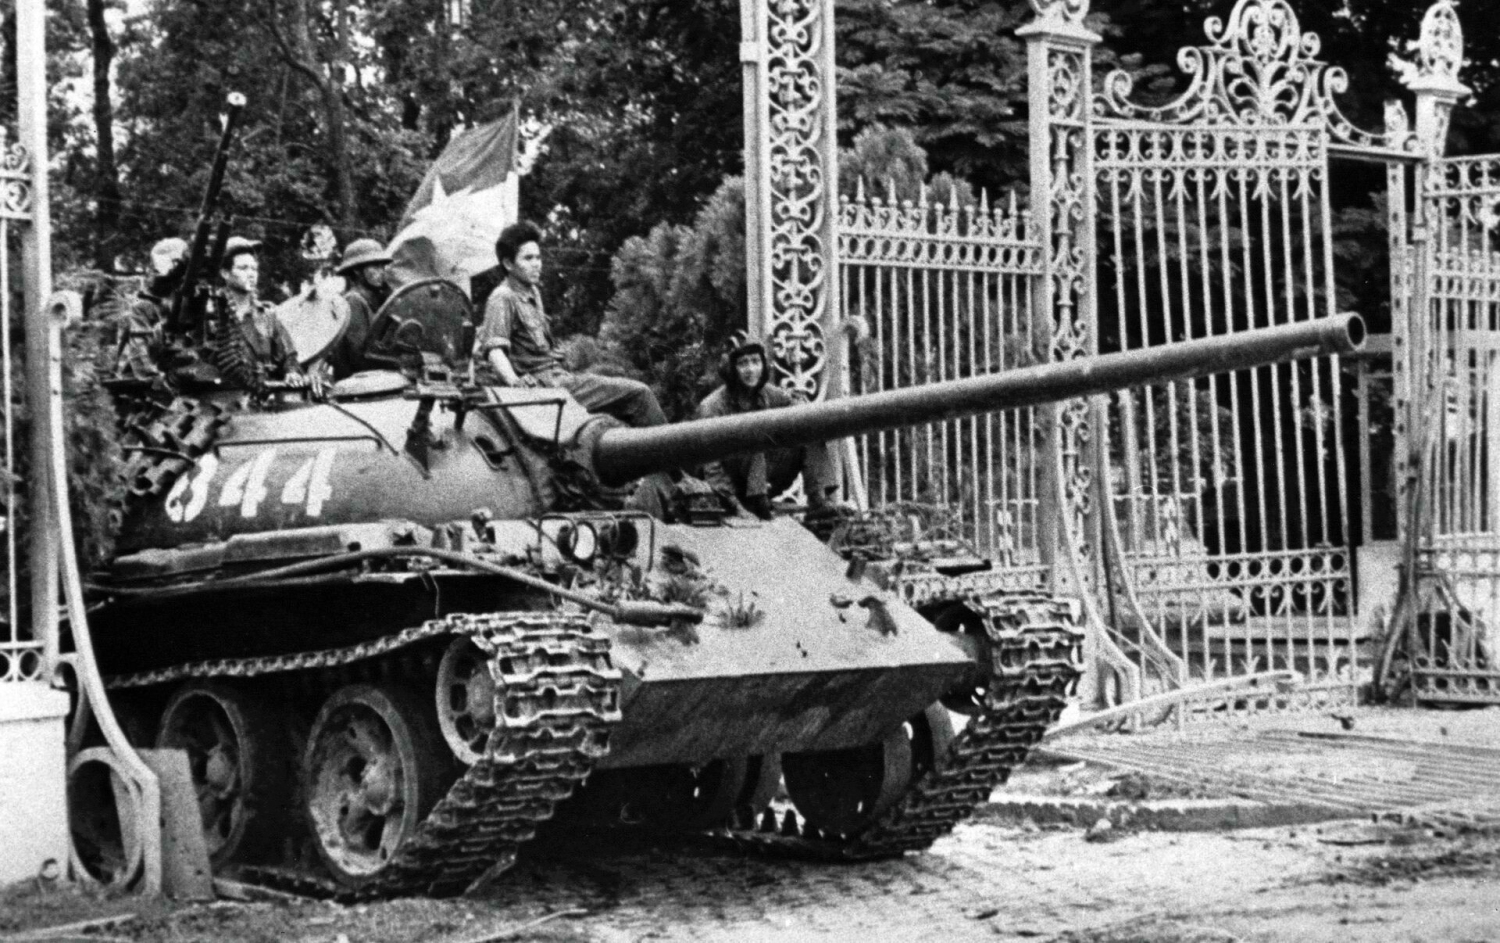 Đại thắng mùa Xuân năm 1975 ​- Thắng lợi của tư tưởng nghệ thuật quân sự Hồ Chí Minh